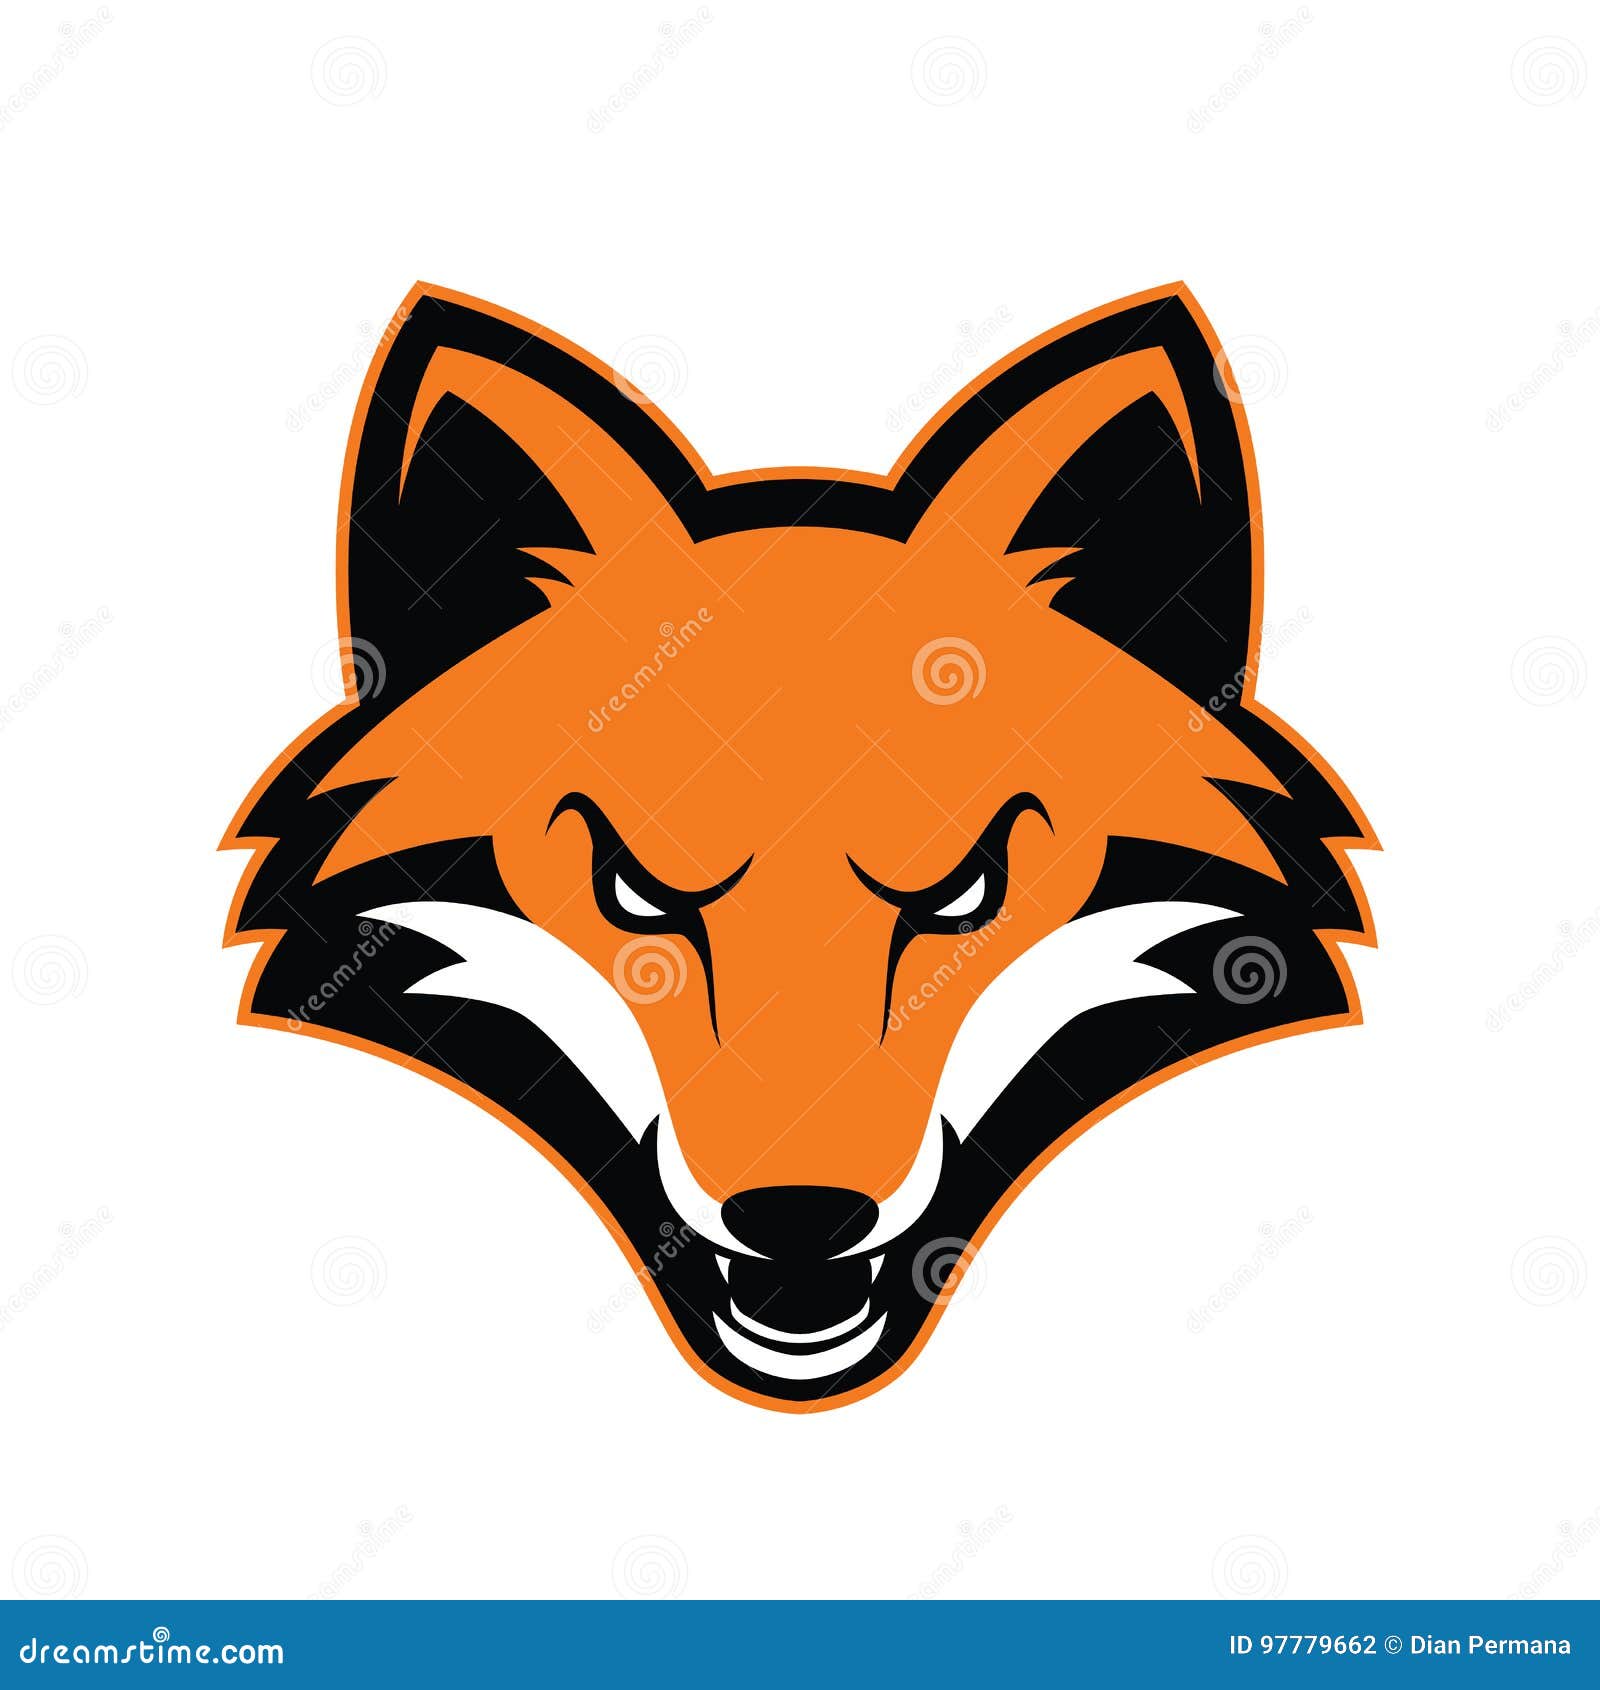 fox head mascot